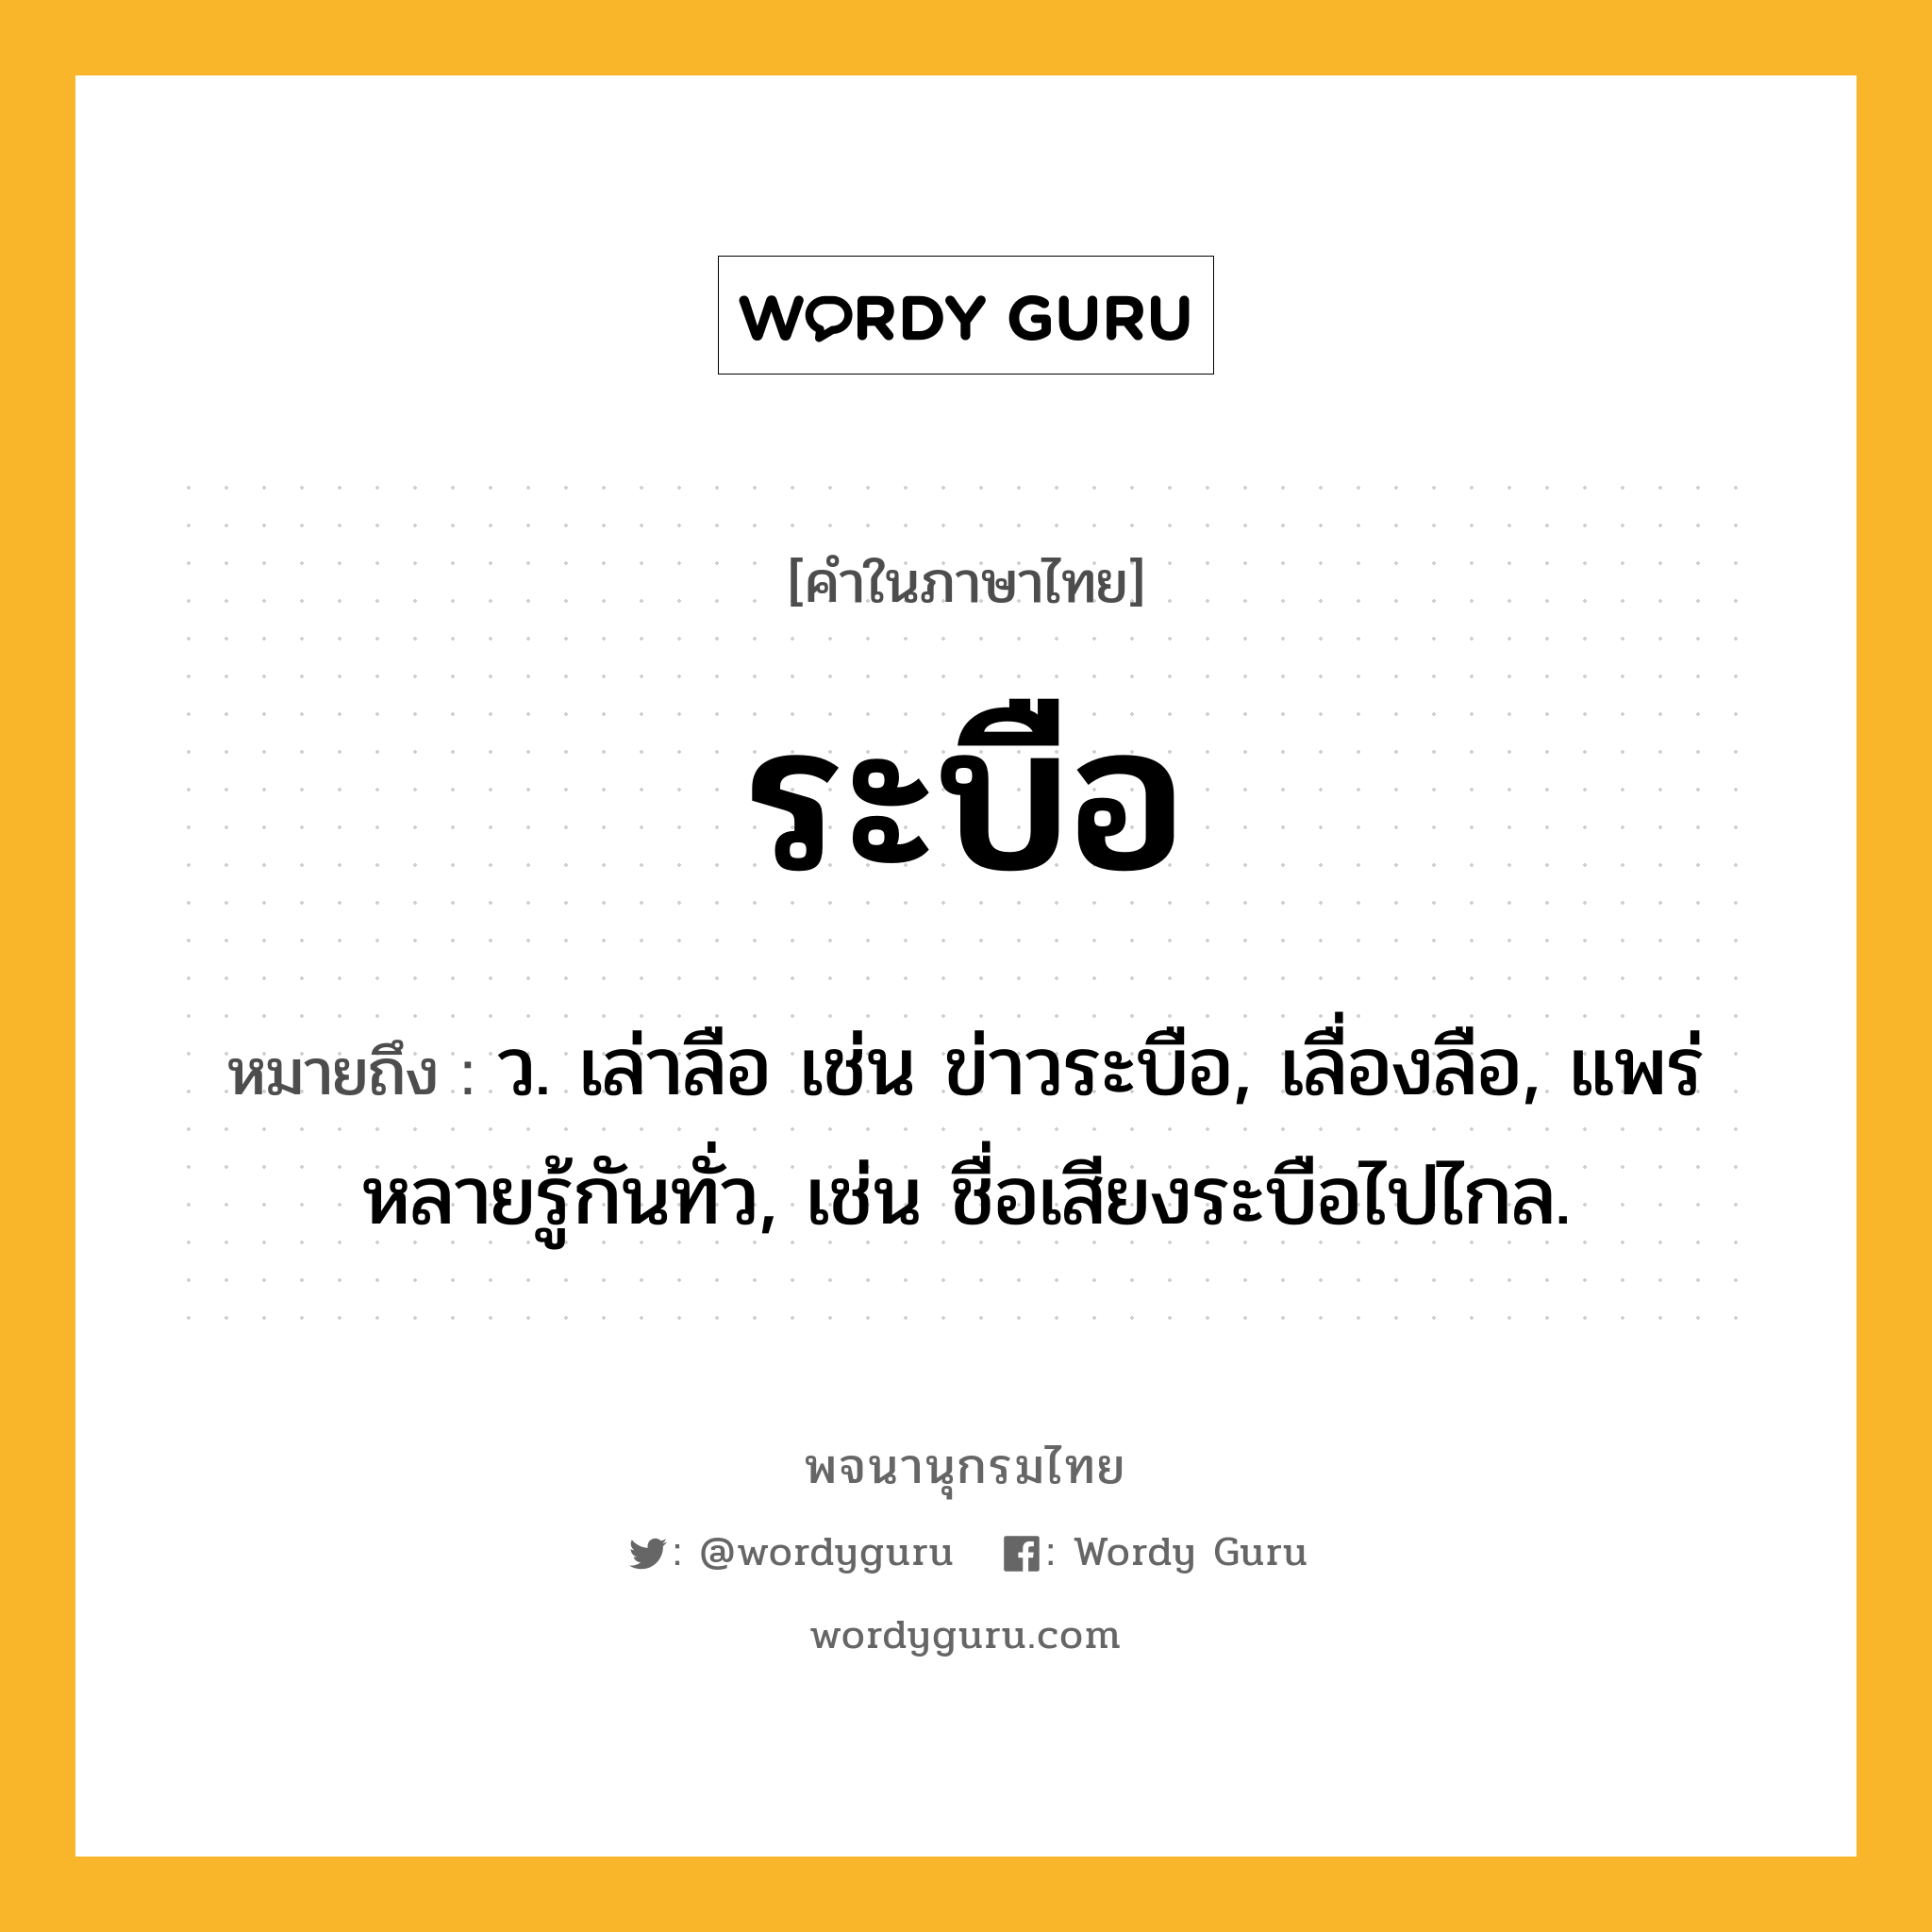 ระบือ หมายถึงอะไร?, คำในภาษาไทย ระบือ หมายถึง ว. เล่าลือ เช่น ข่าวระบือ, เลื่องลือ, แพร่หลายรู้กันทั่ว, เช่น ชื่อเสียงระบือไปไกล.